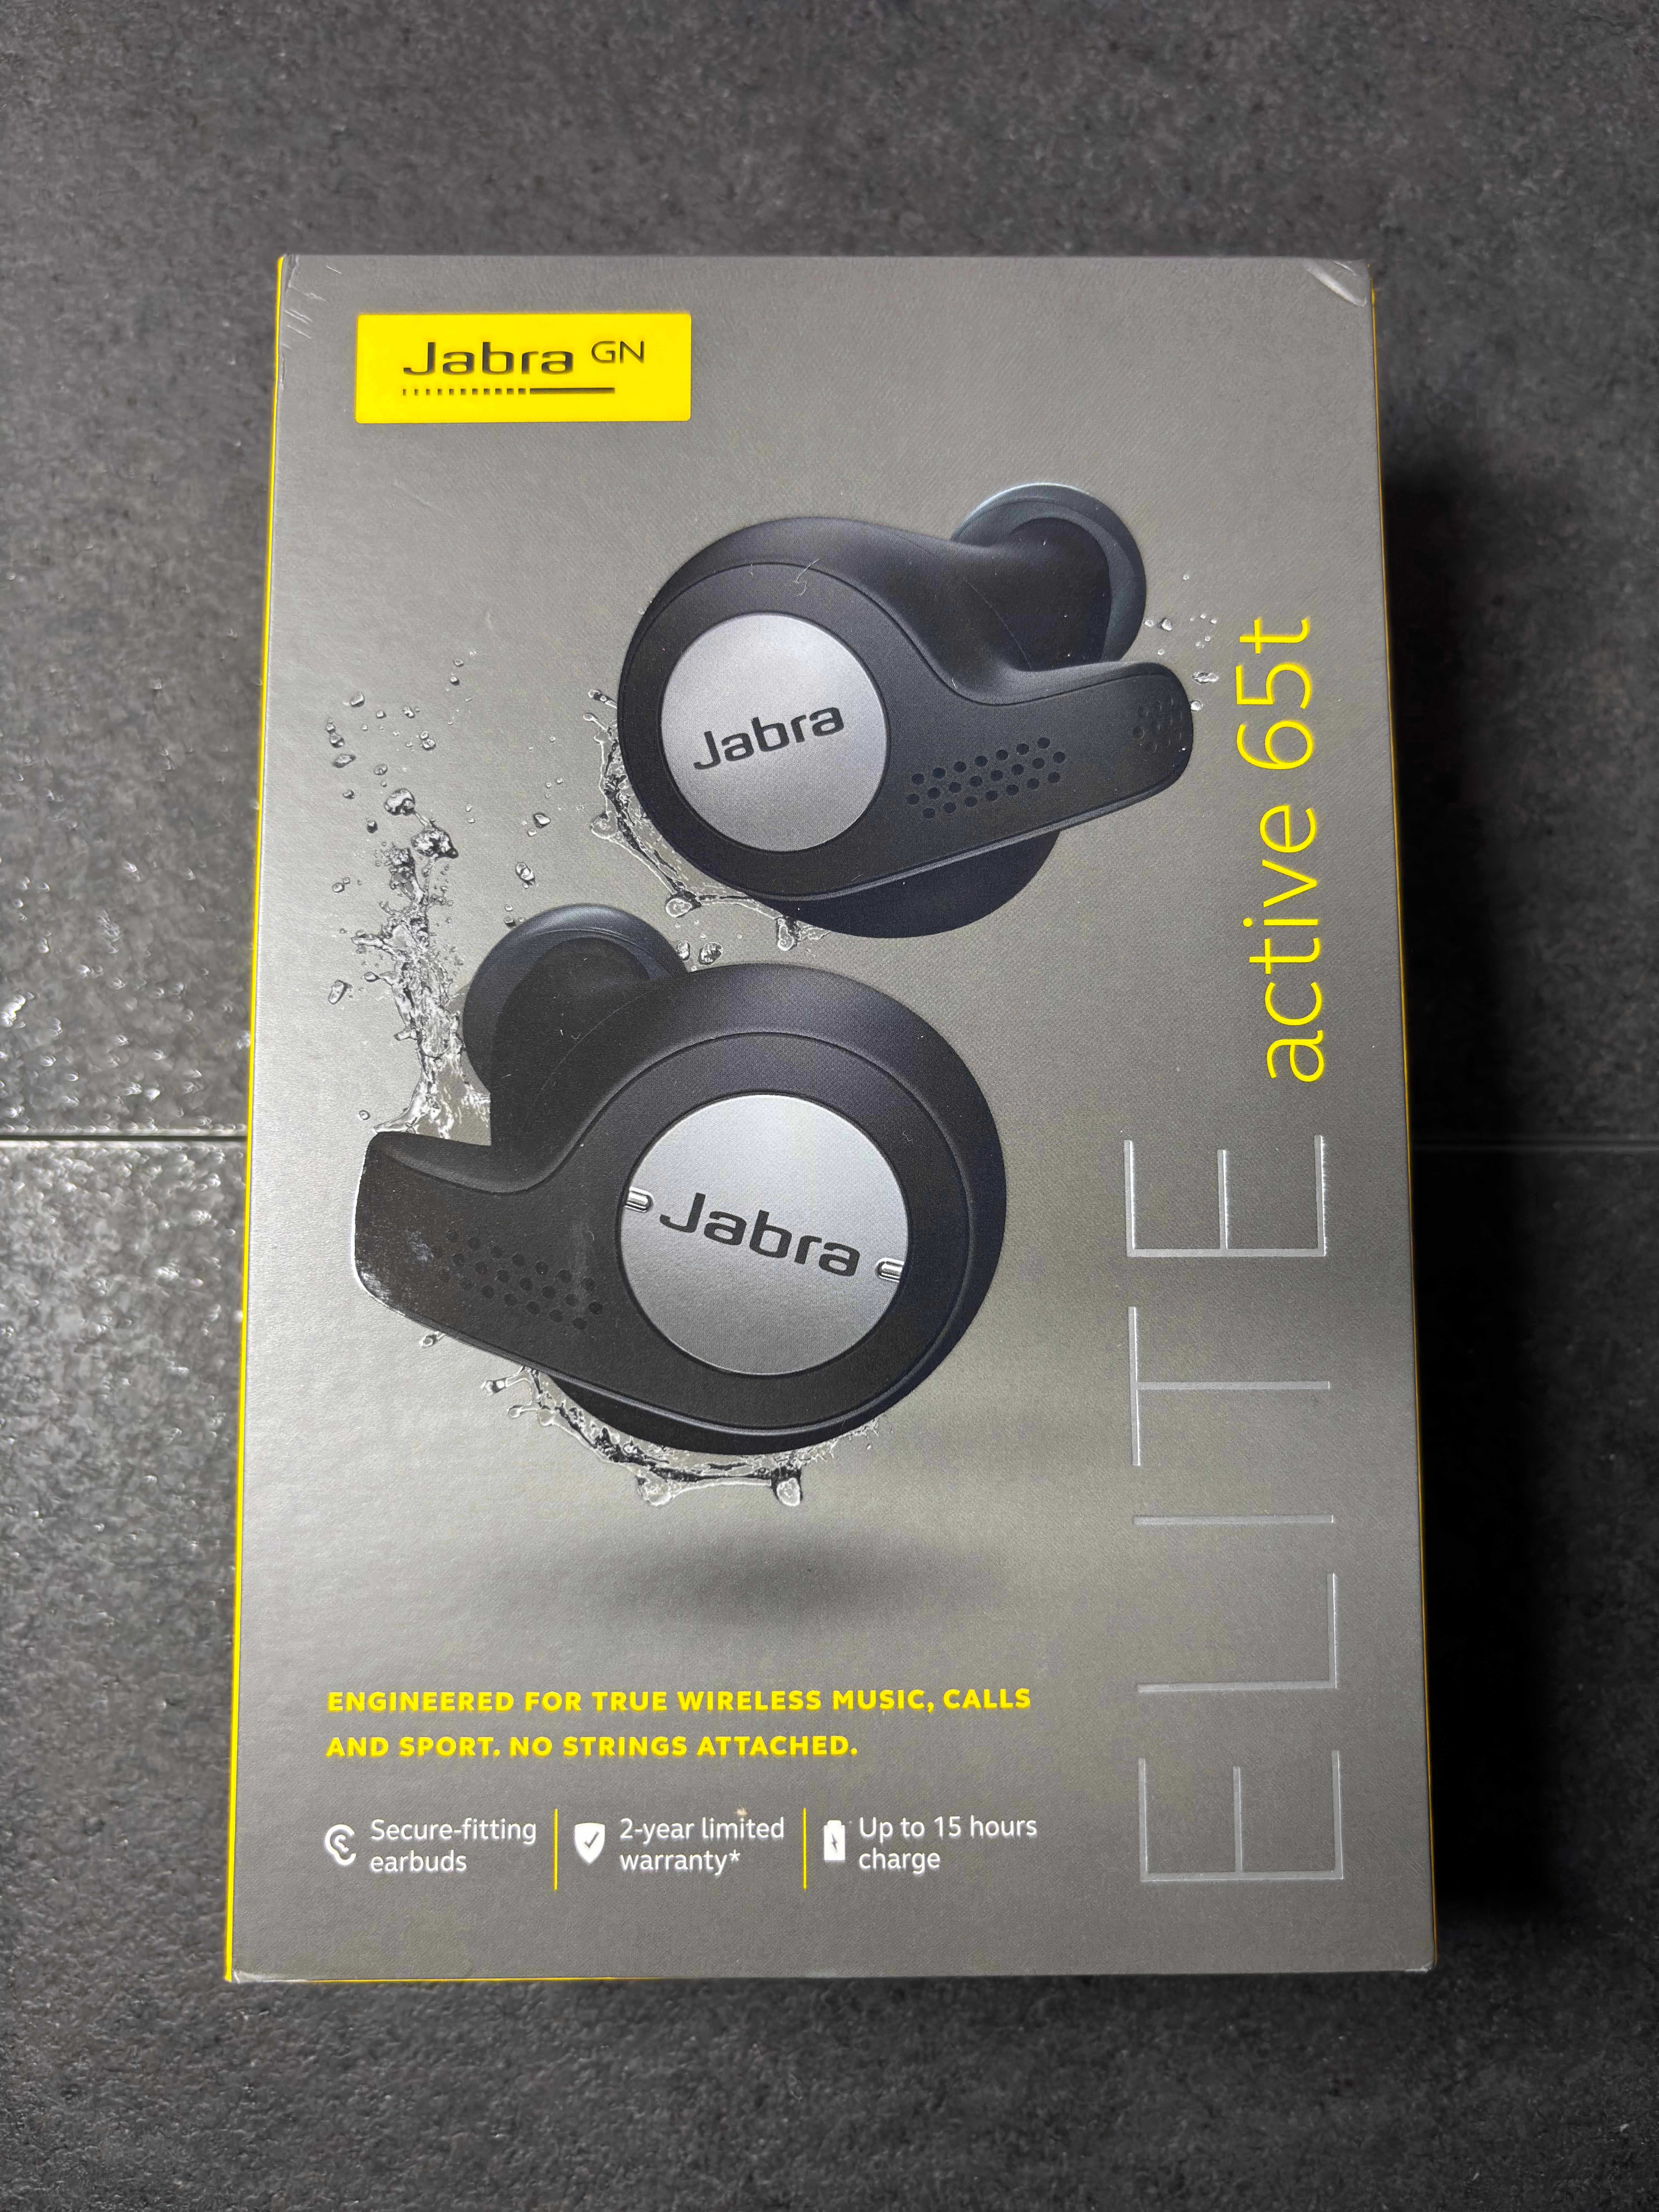 Słuchawki bezprzewodowe Jabra Elite Active 65t